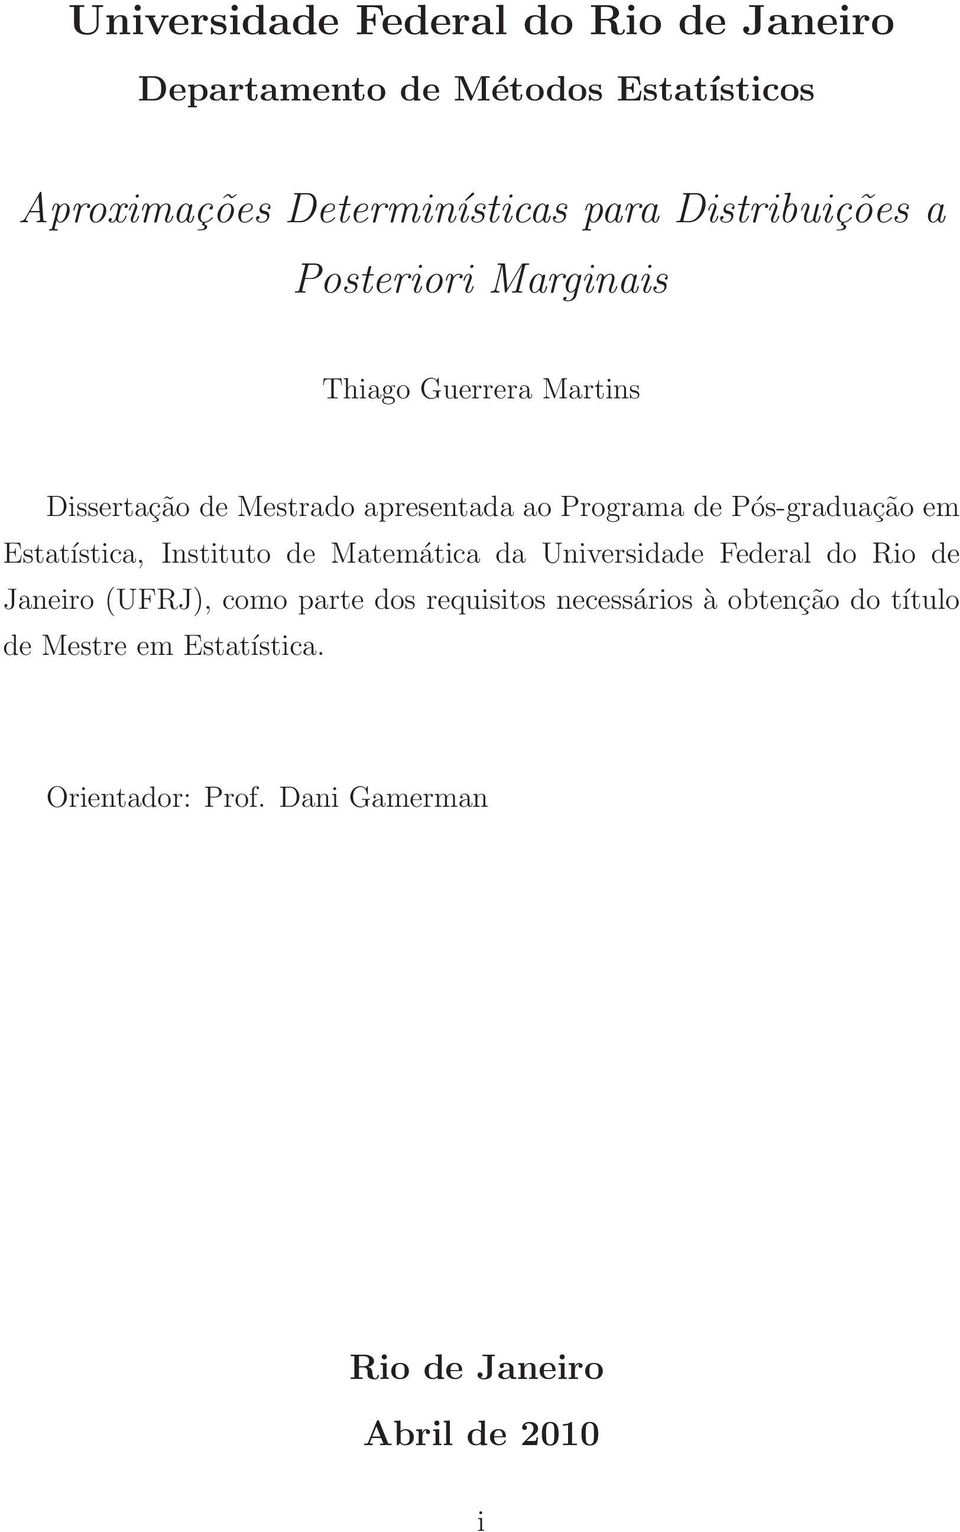 Pós-graduação em Estatística, Instituto de Matemática da Universidade Federal do Rio de Janeiro (UFRJ), como parte dos